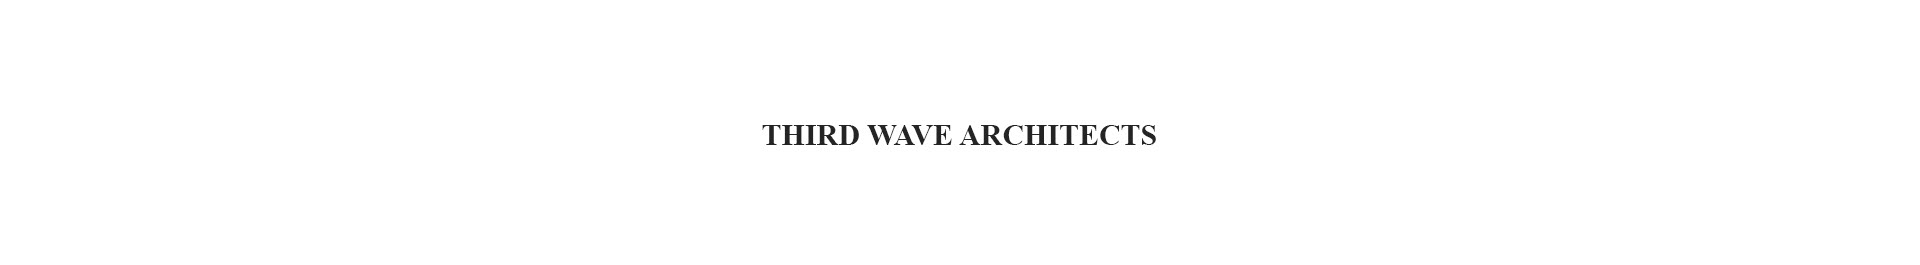 Баннер профиля Third Wave Architects